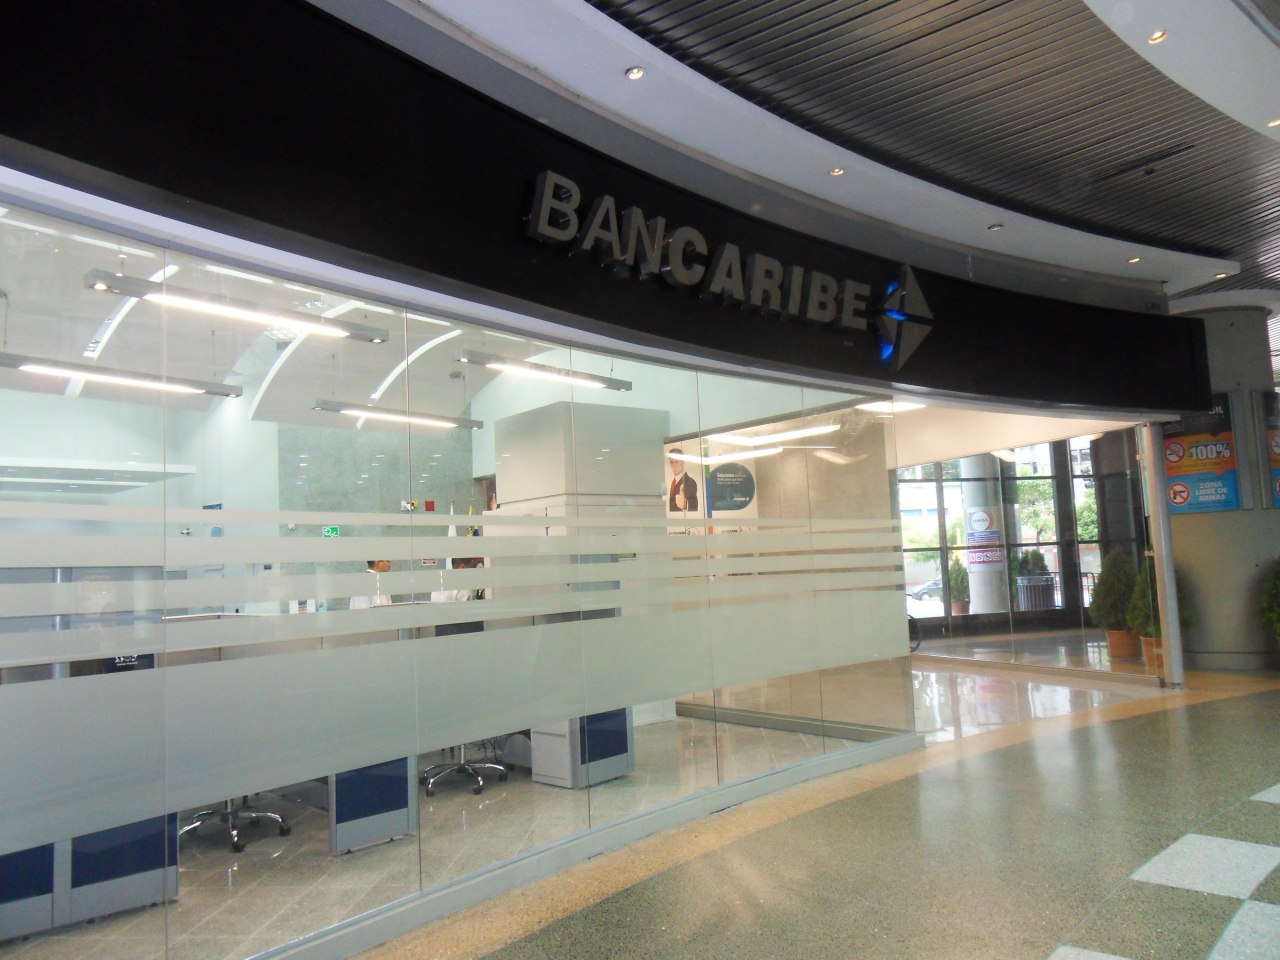 Bancaribe ofrece oportunidades a la juventud venezolana